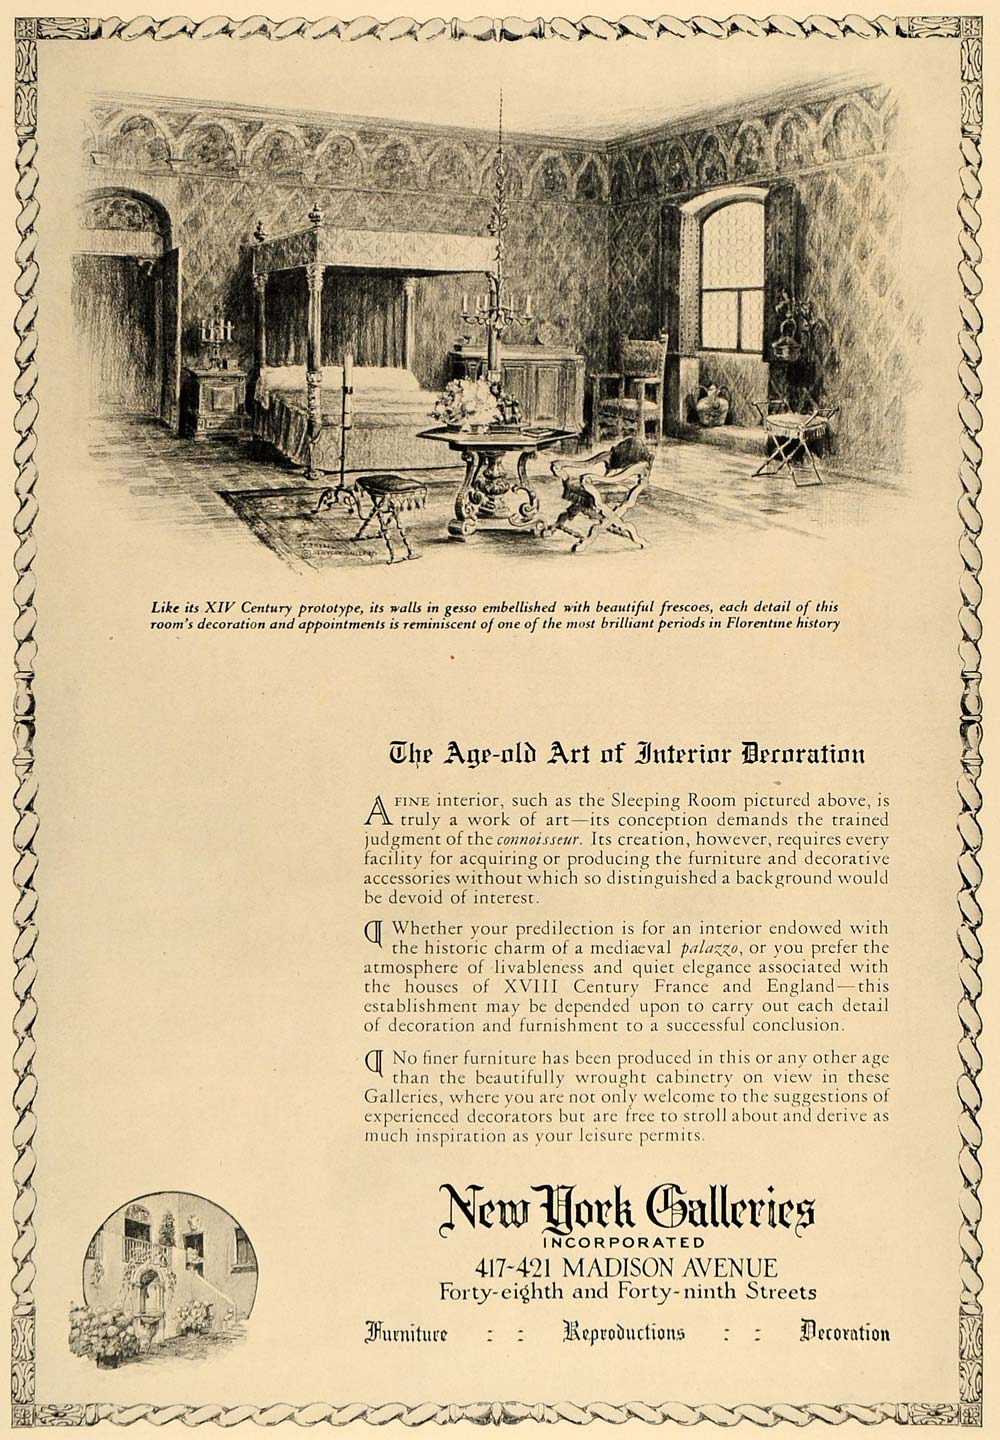 1924 Ad New York Galleries Antique Period Furniture - ORIGINAL ADVERTISING CL4